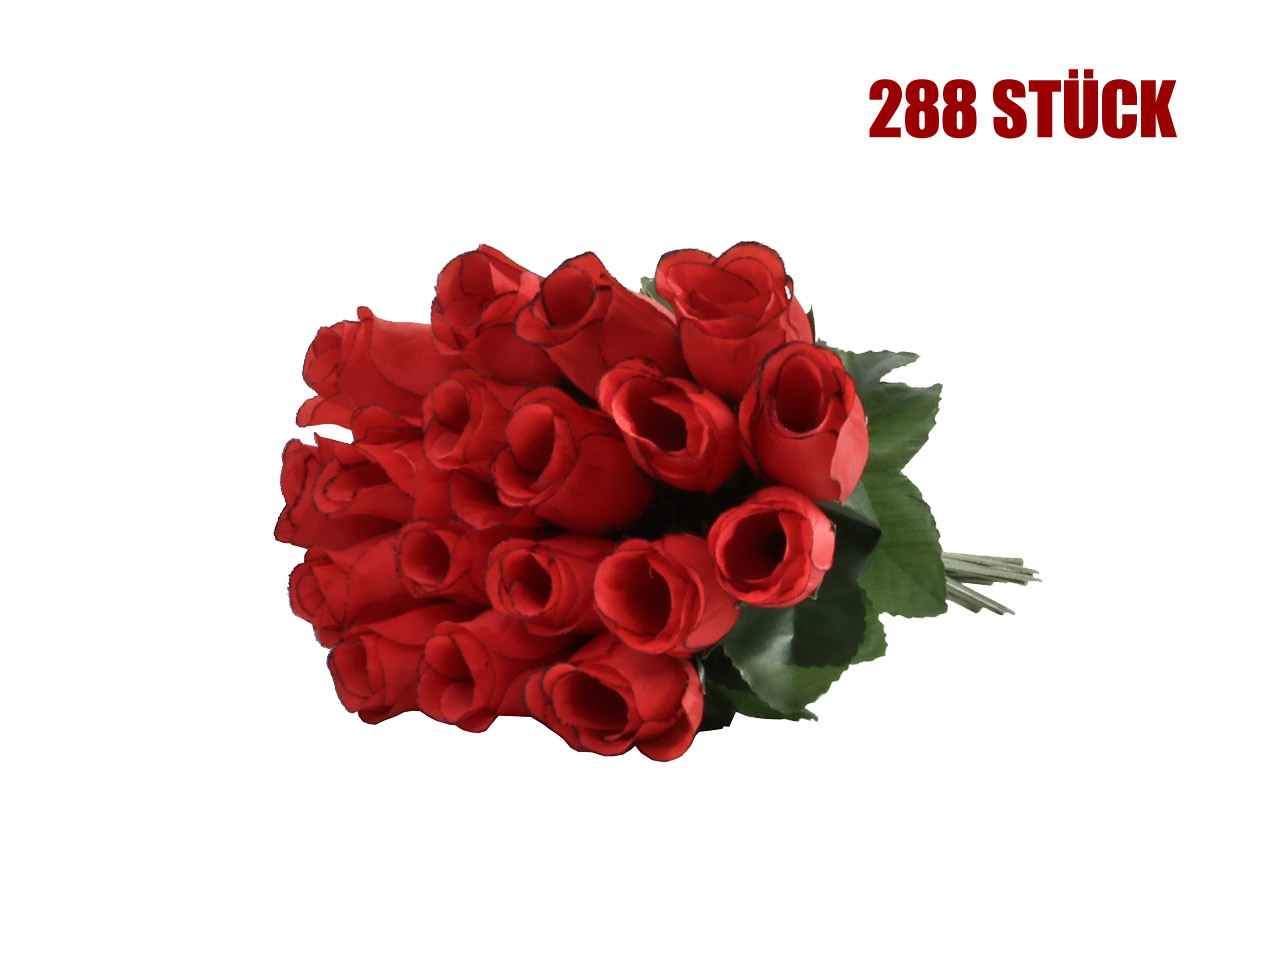 Schießbudenblumen, rote Rosen, Länge 20 cm, 288 Stück